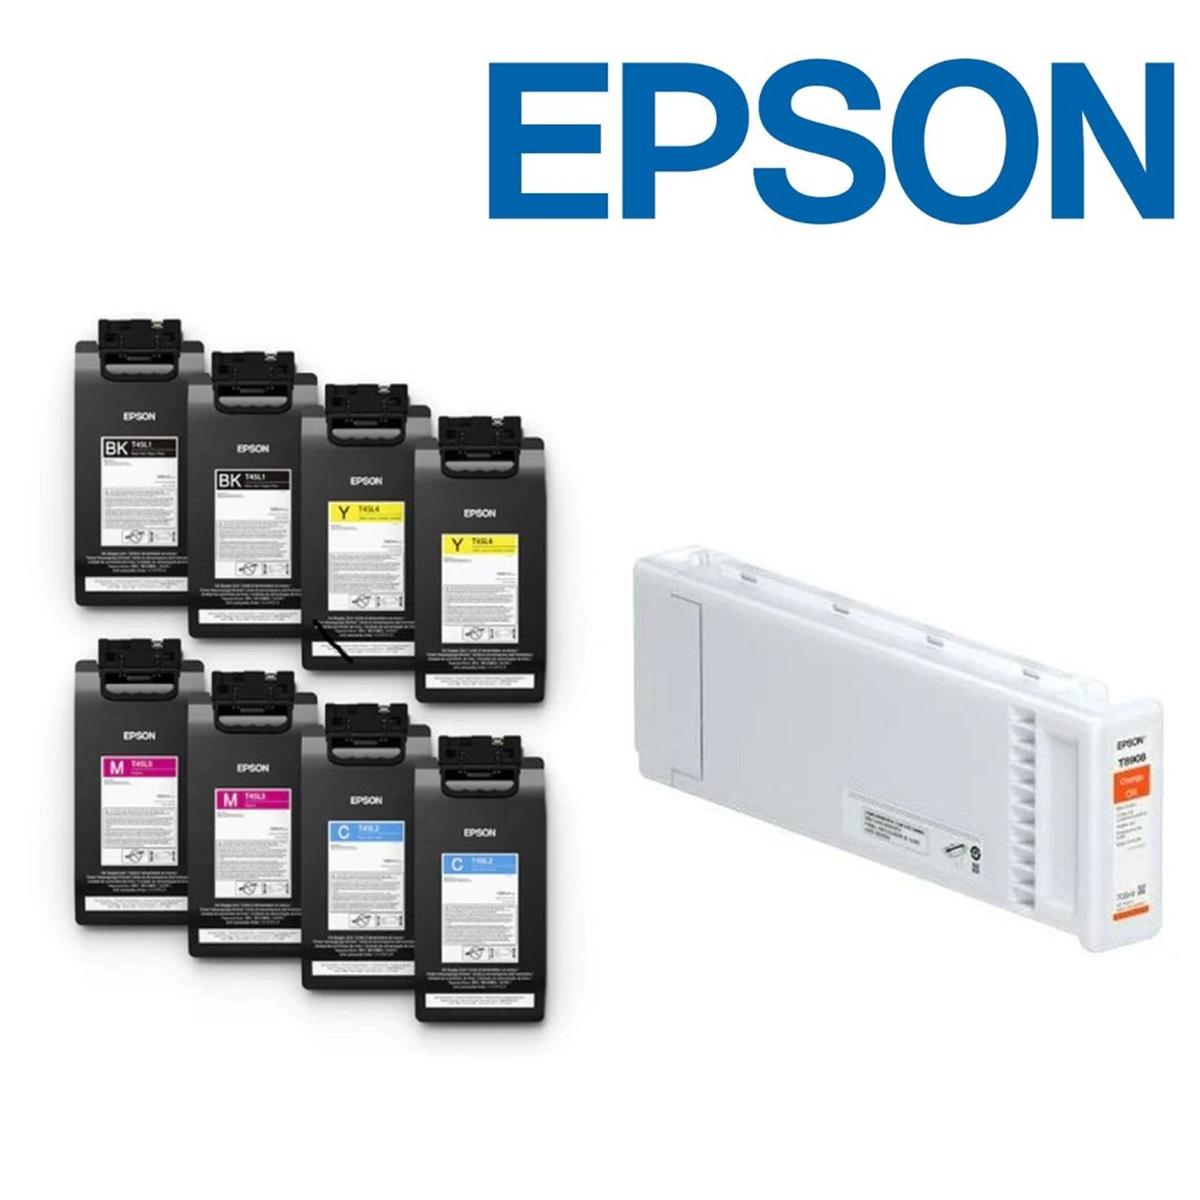 Epson Eco Solvent Printer Ink